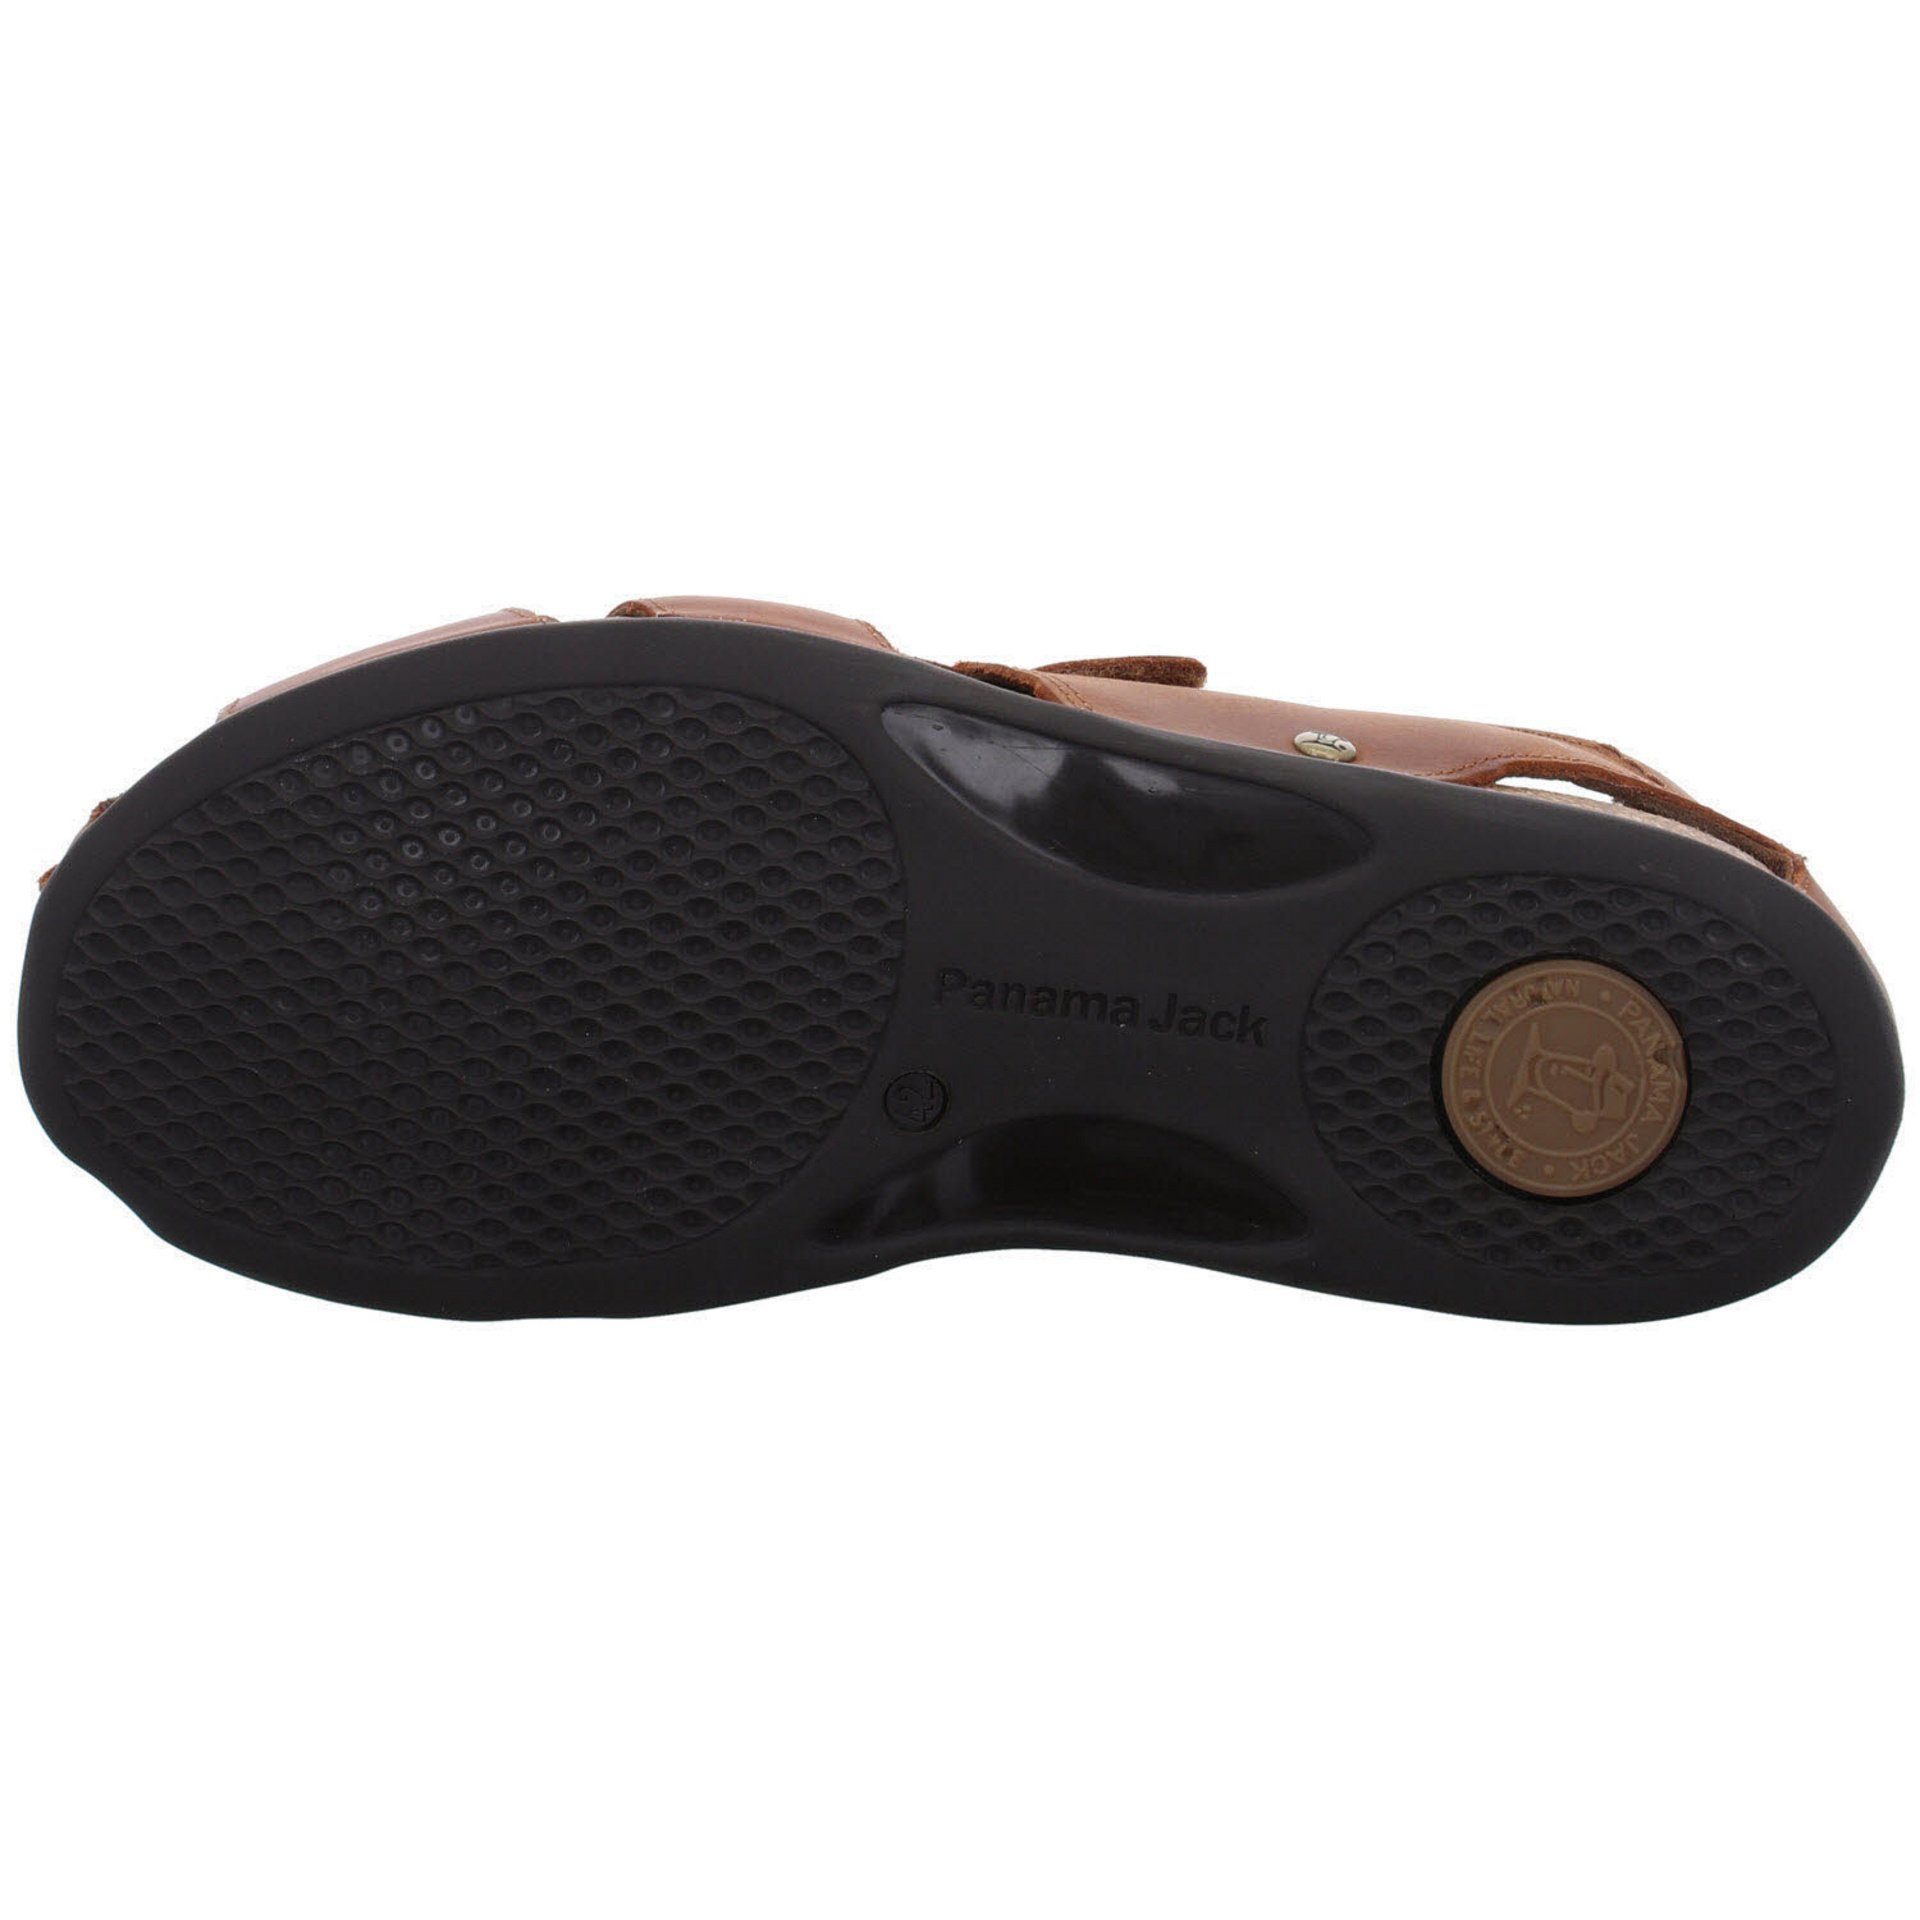 Panama Sandale Sandale Jack Herren braun-mittel Fletcher Sandalen C5 Basics Fettleder